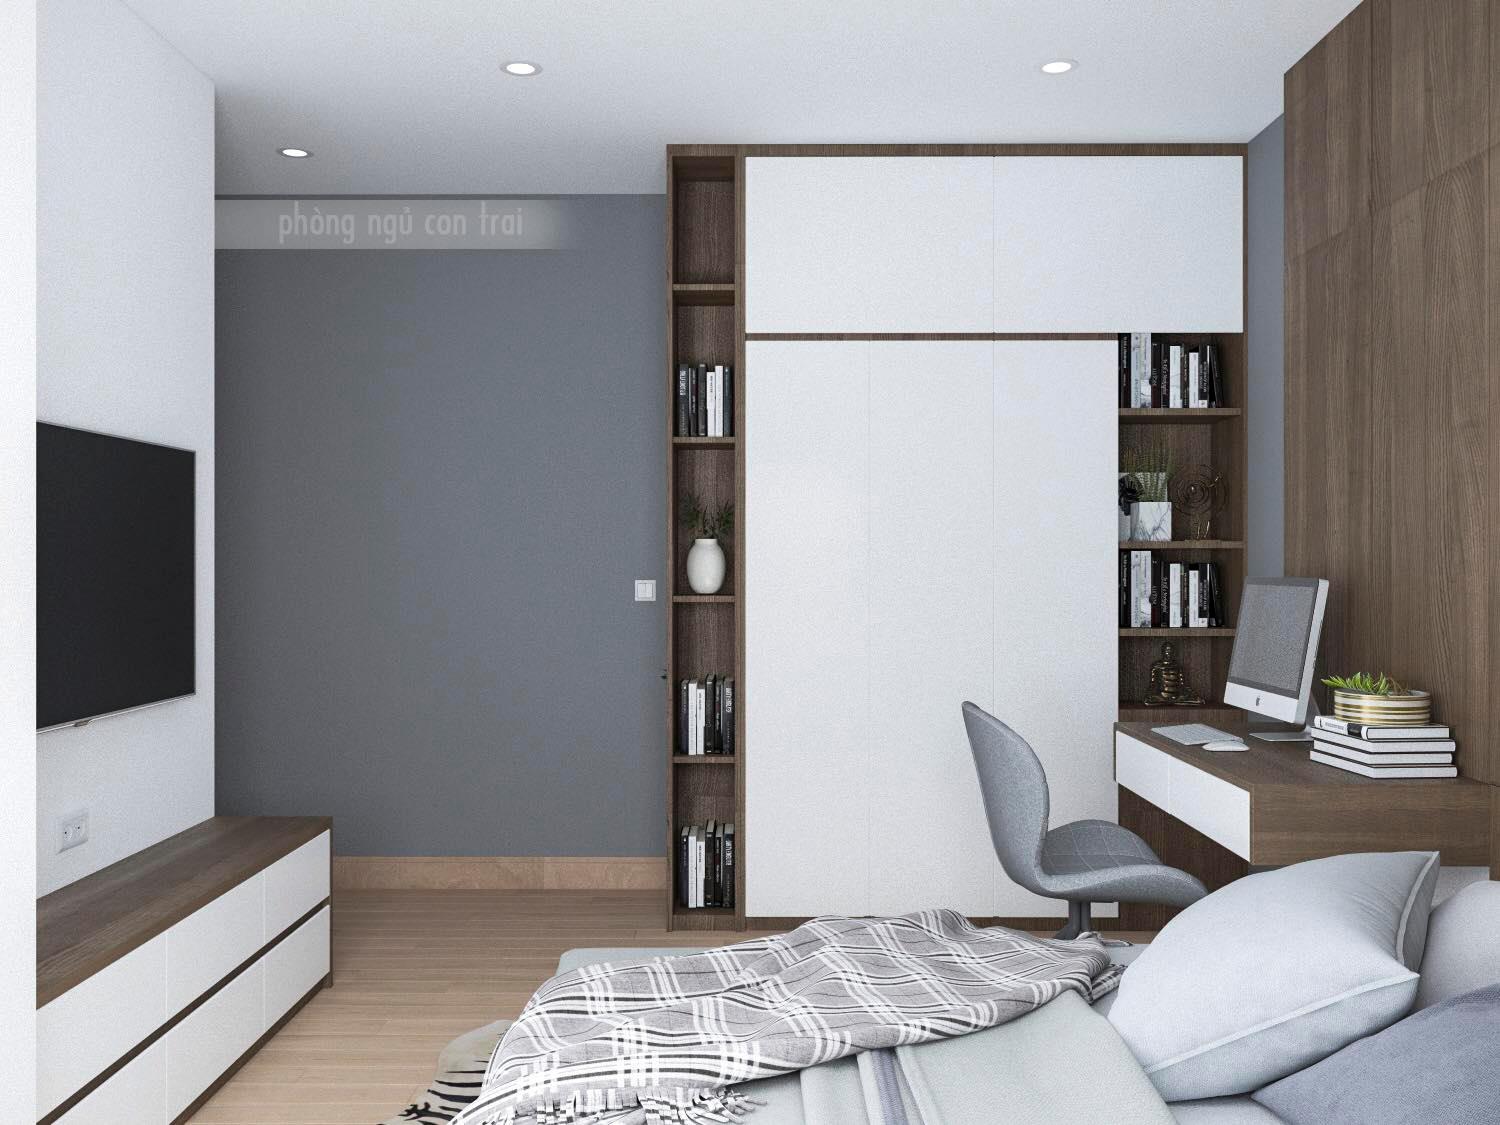 Thiết kế nội thất phòng ngủ tổng màu trầm xám nam tính 3D mang đến cho bạn một không gian tràn đầy sức sống. Màu sắc phòng ngủ được lựa chọn tỉ mỉ và kết hợp hoàn hảo giữa những tông màu trầm và nổi bật. Đó sẽ là một không gian phù hợp cho những chàng trai đang tìm kiếm một không gian sống đầy phong cách và cá tính.